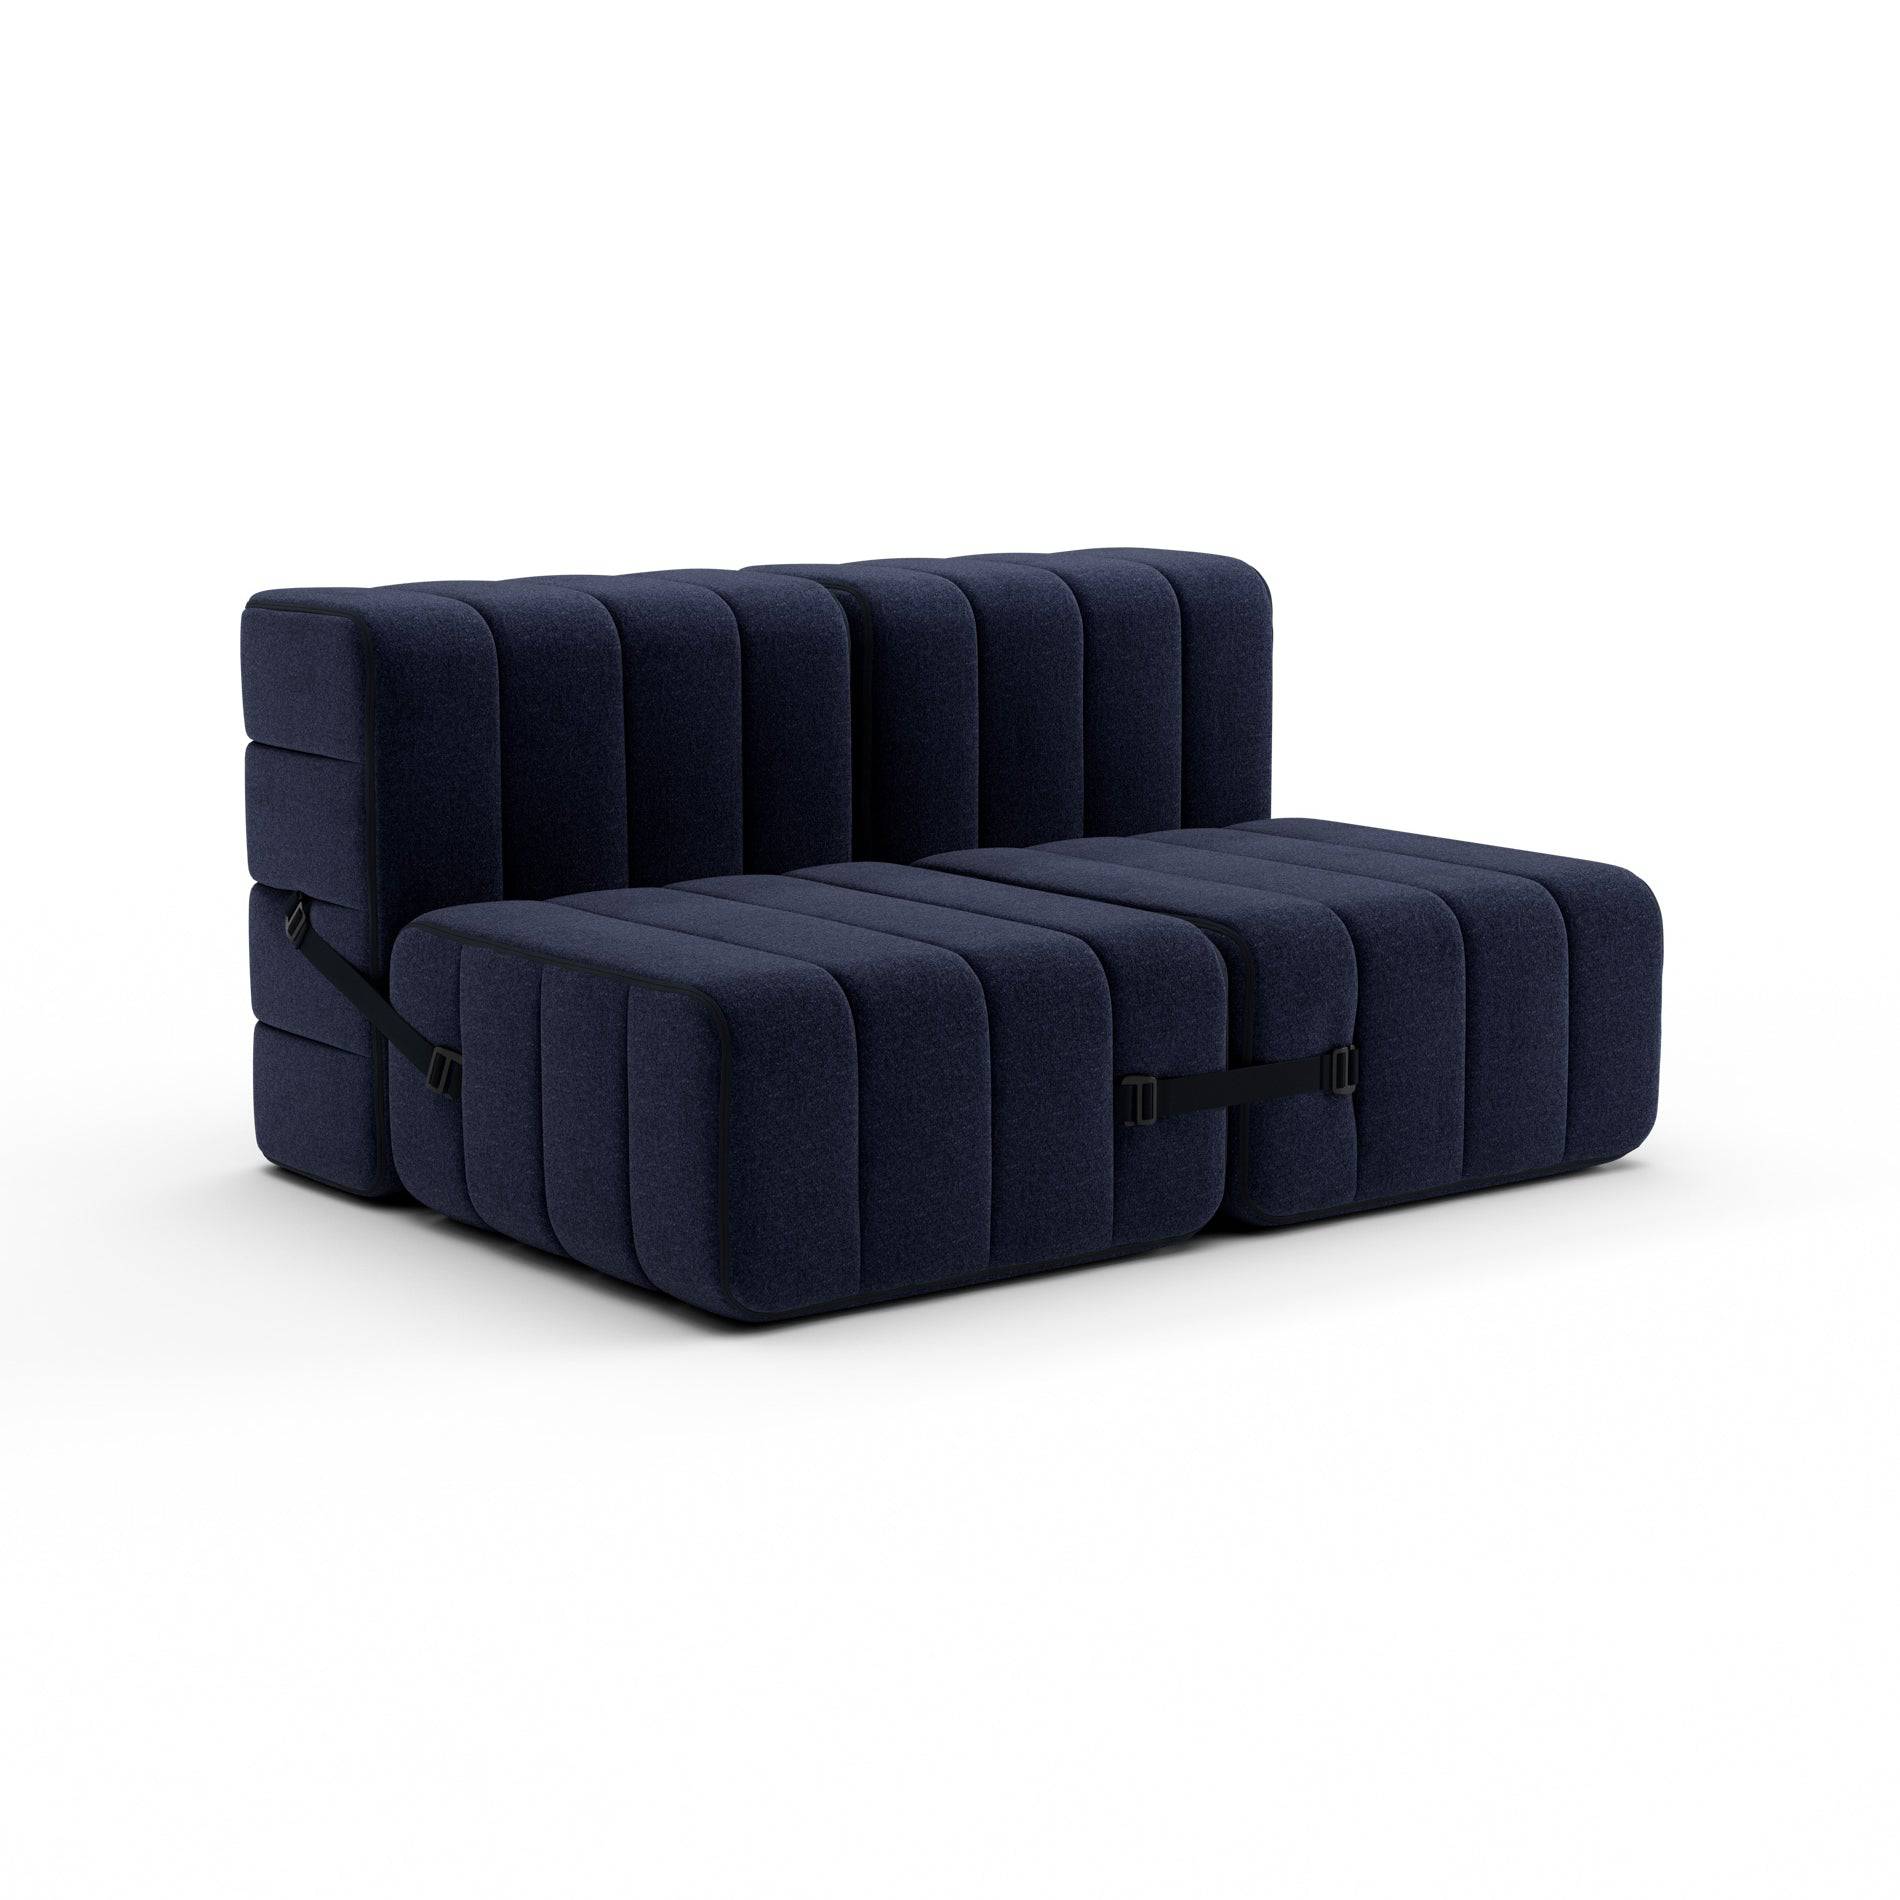 Curt Sofa System - Blue